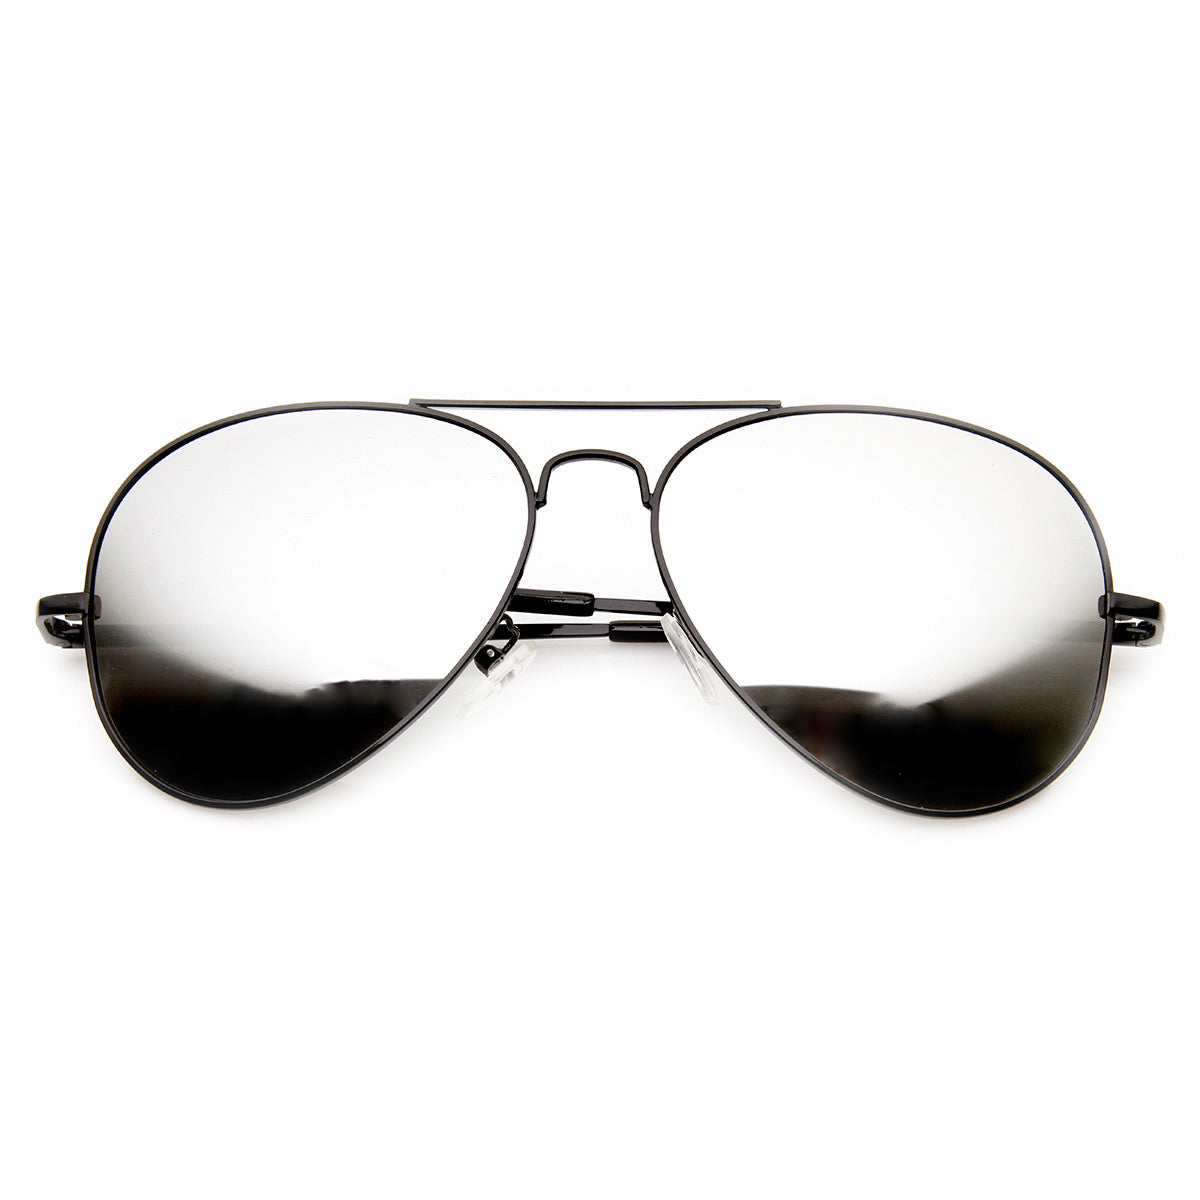 FULL MIRROR Mirrored Metal Aviator Sunglasses